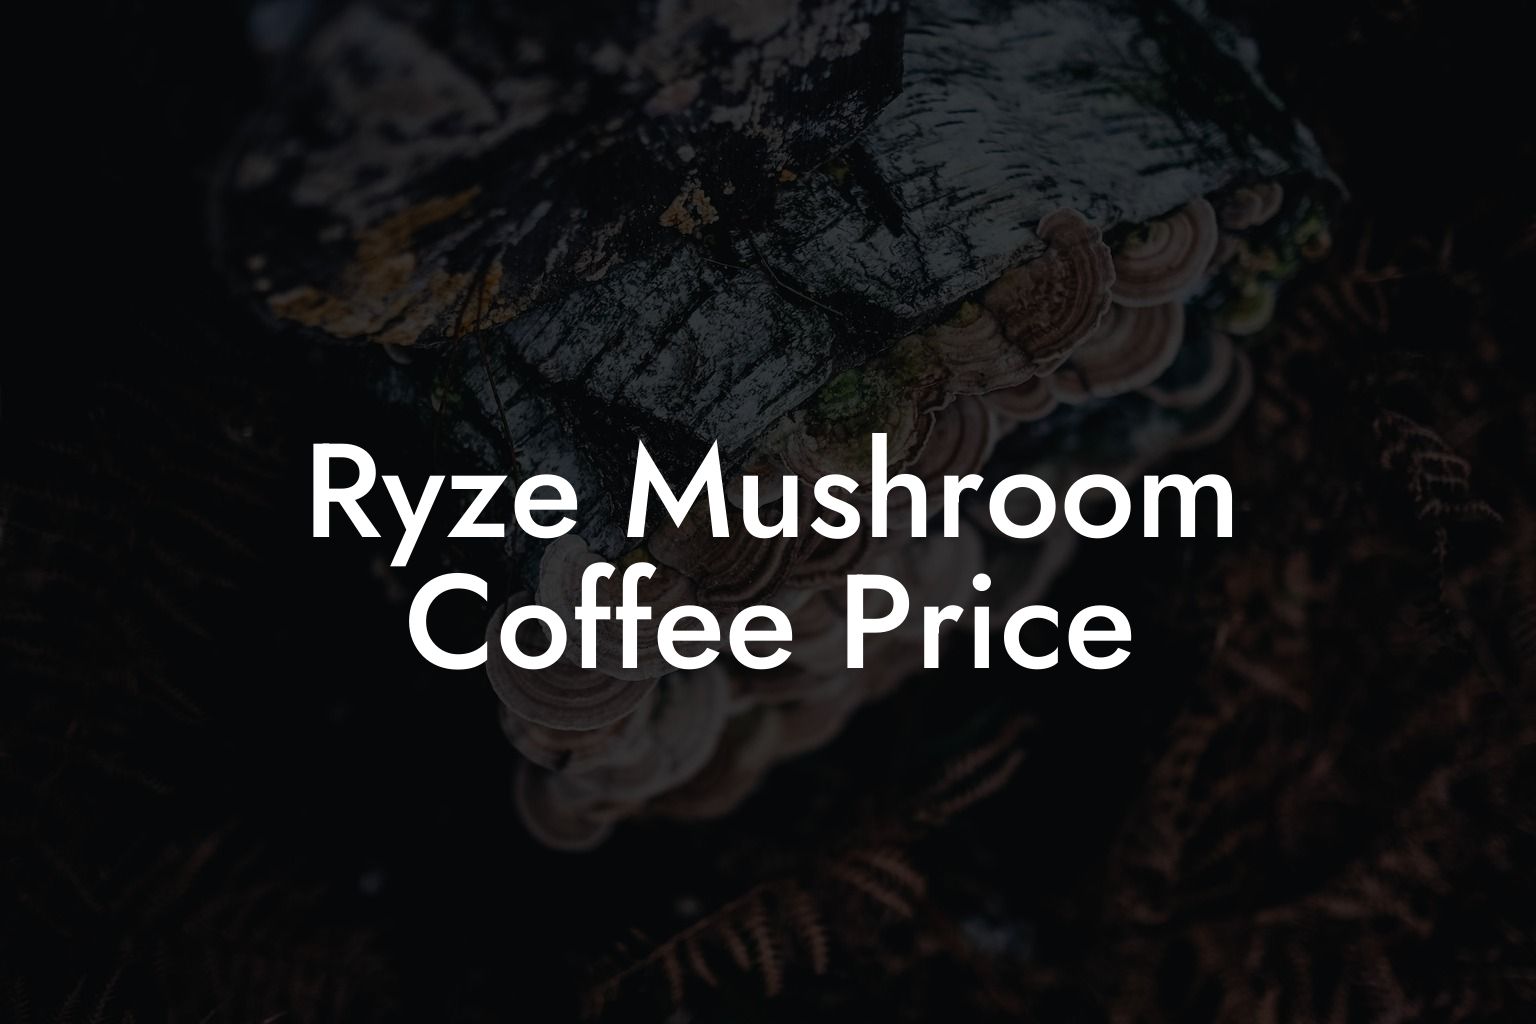 Ryze Mushroom Coffee Price